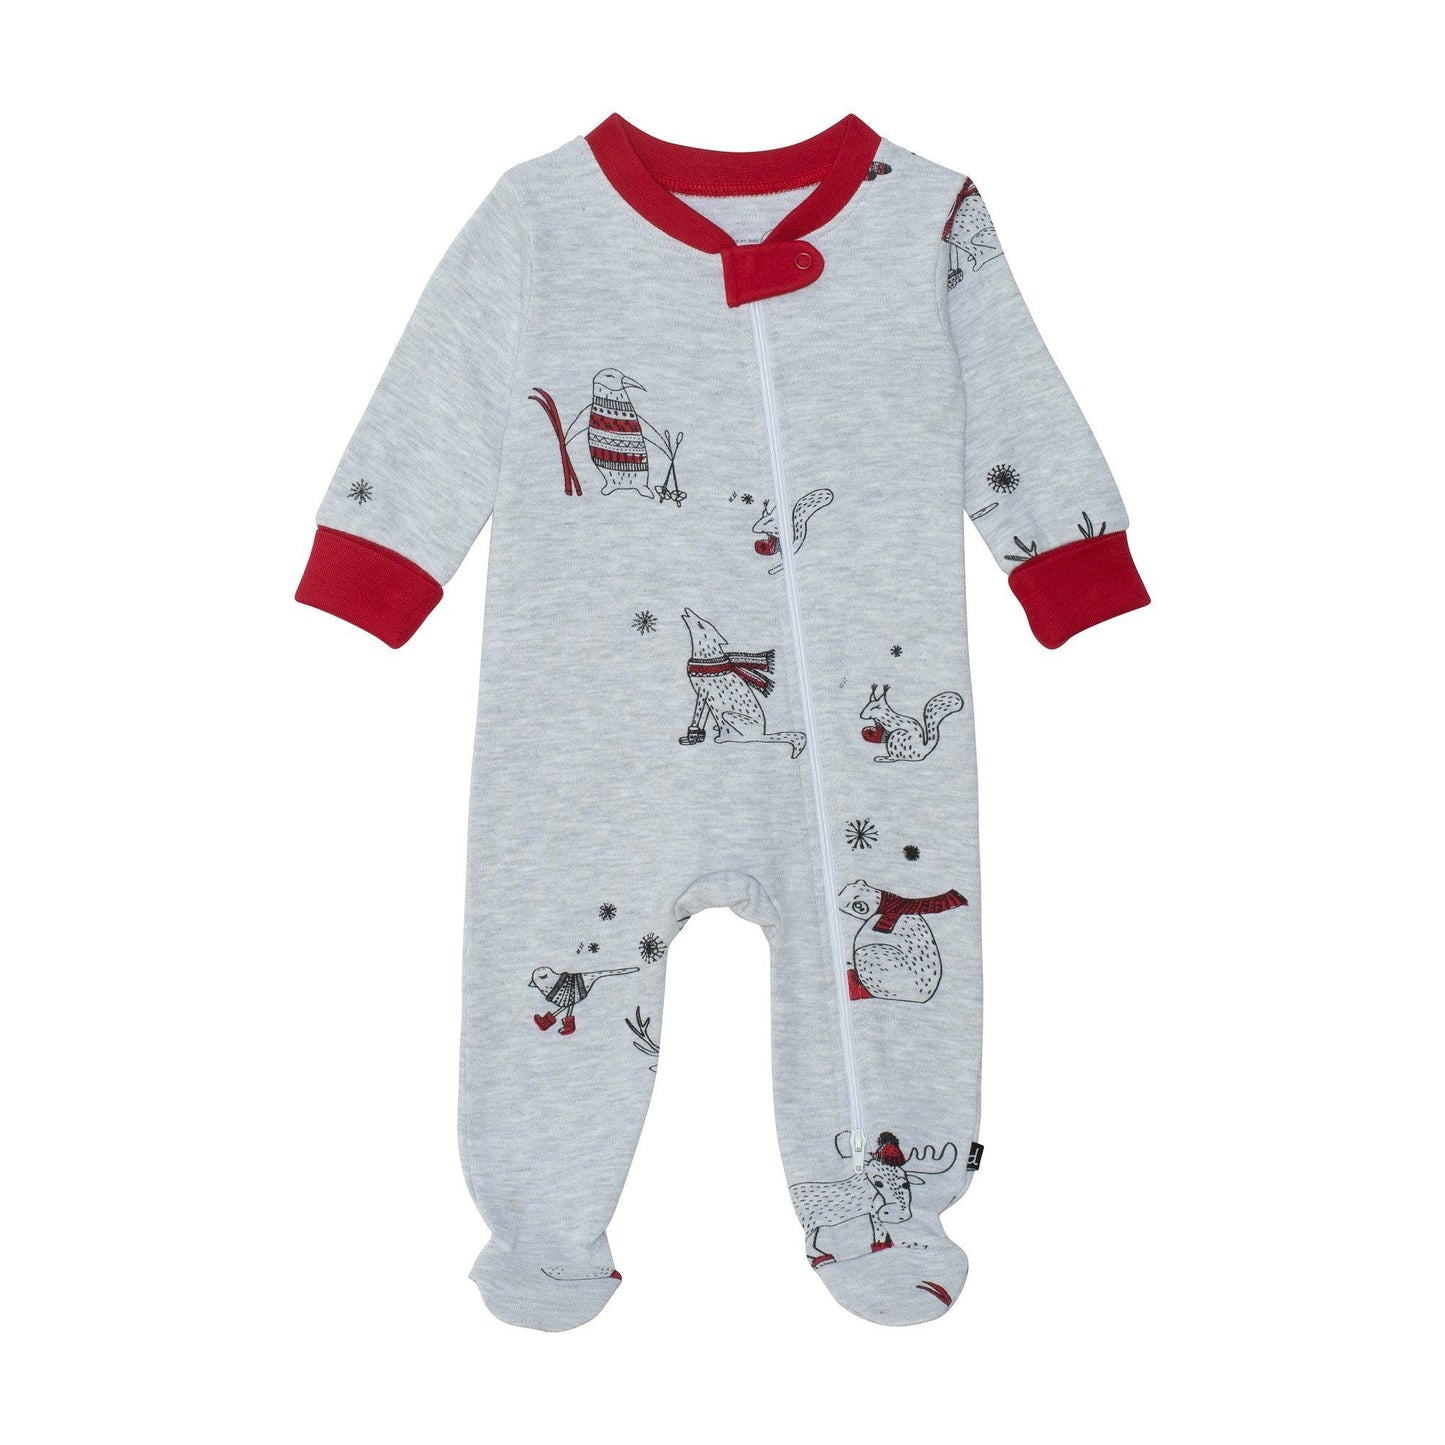 Baby Family Organic Cotton One-Piece Holiday Pajamas